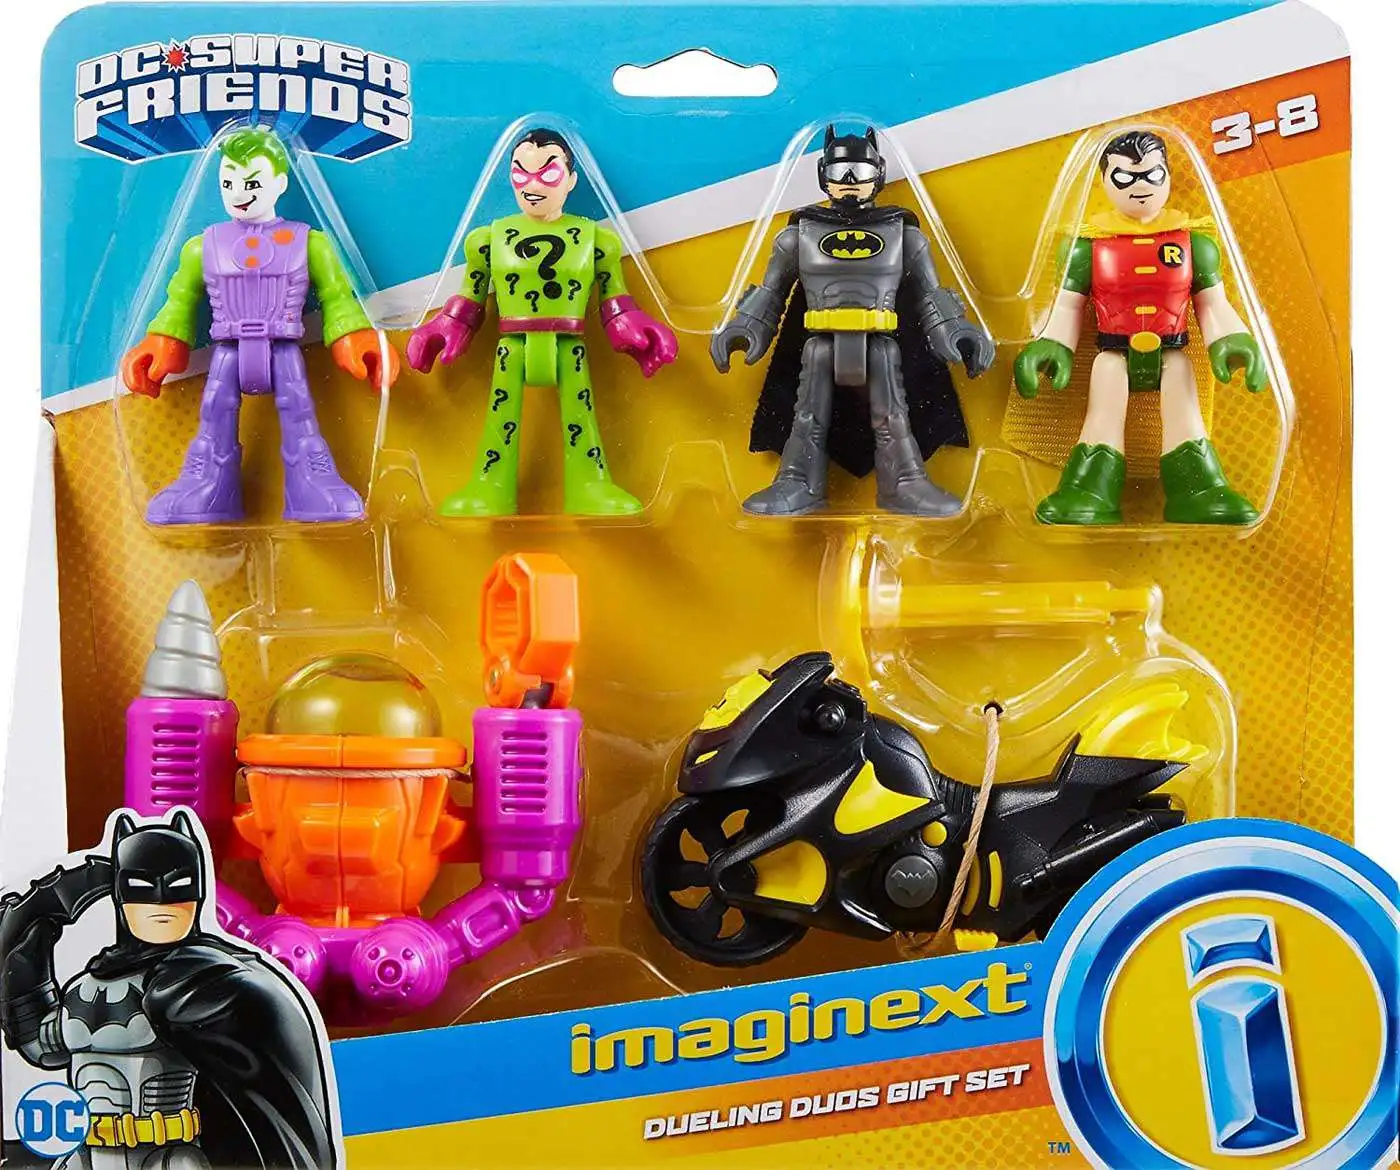 Imaginext 2018 DC Super Friends Batman & Batcycle Set for sale online 